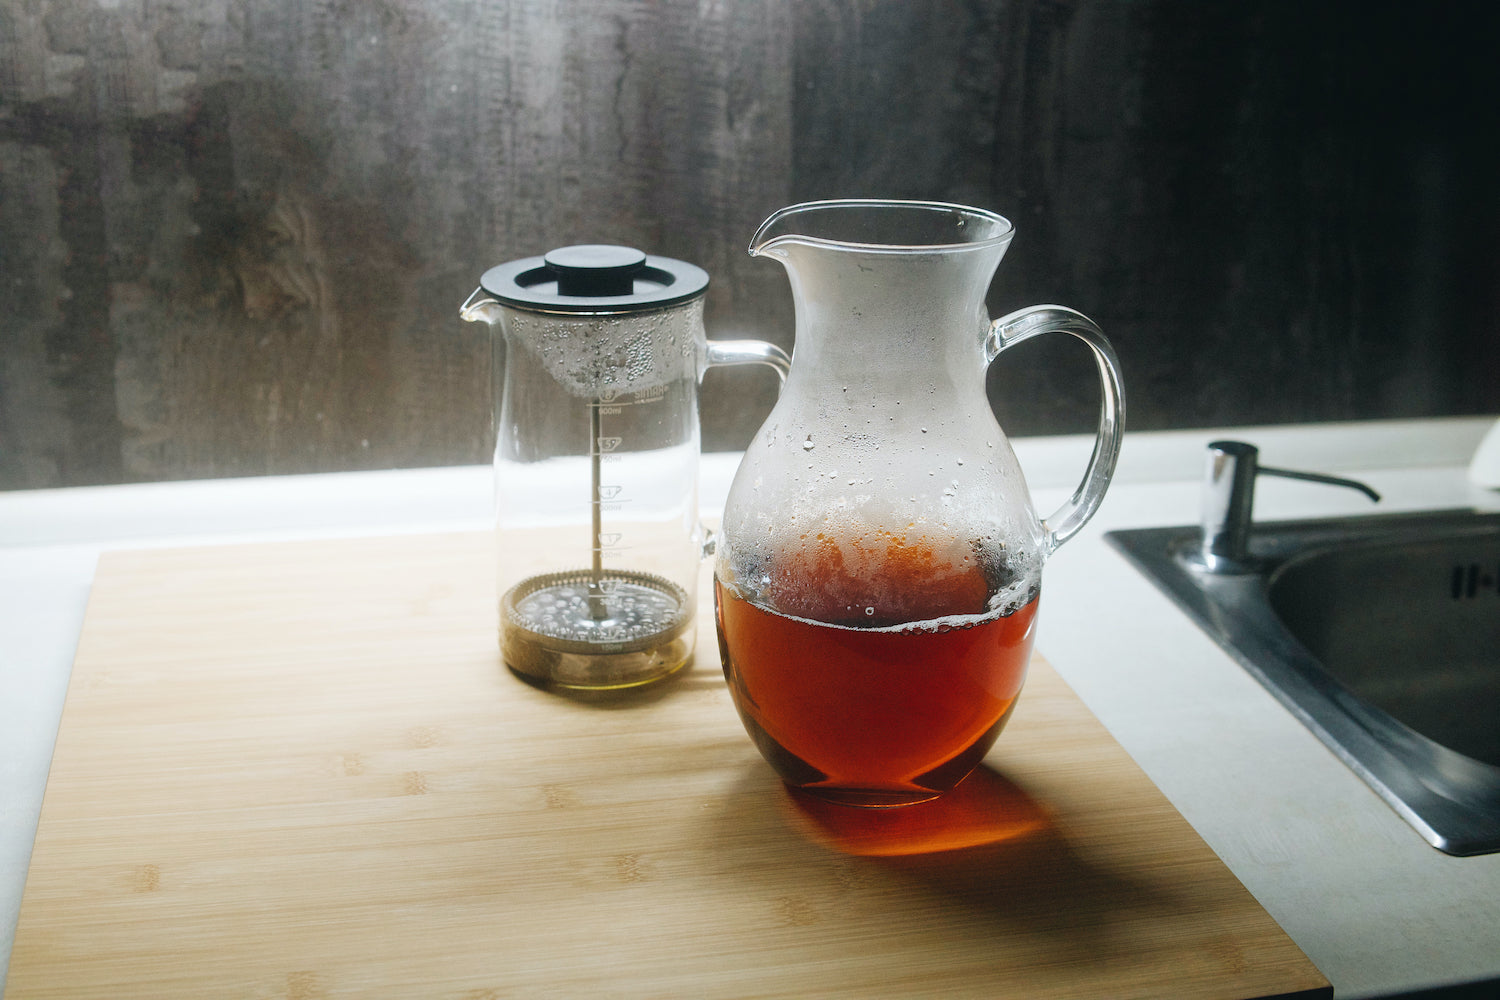 Skleněný džbán s čajem Simax Klasik 1,5l na kuchyňské lince